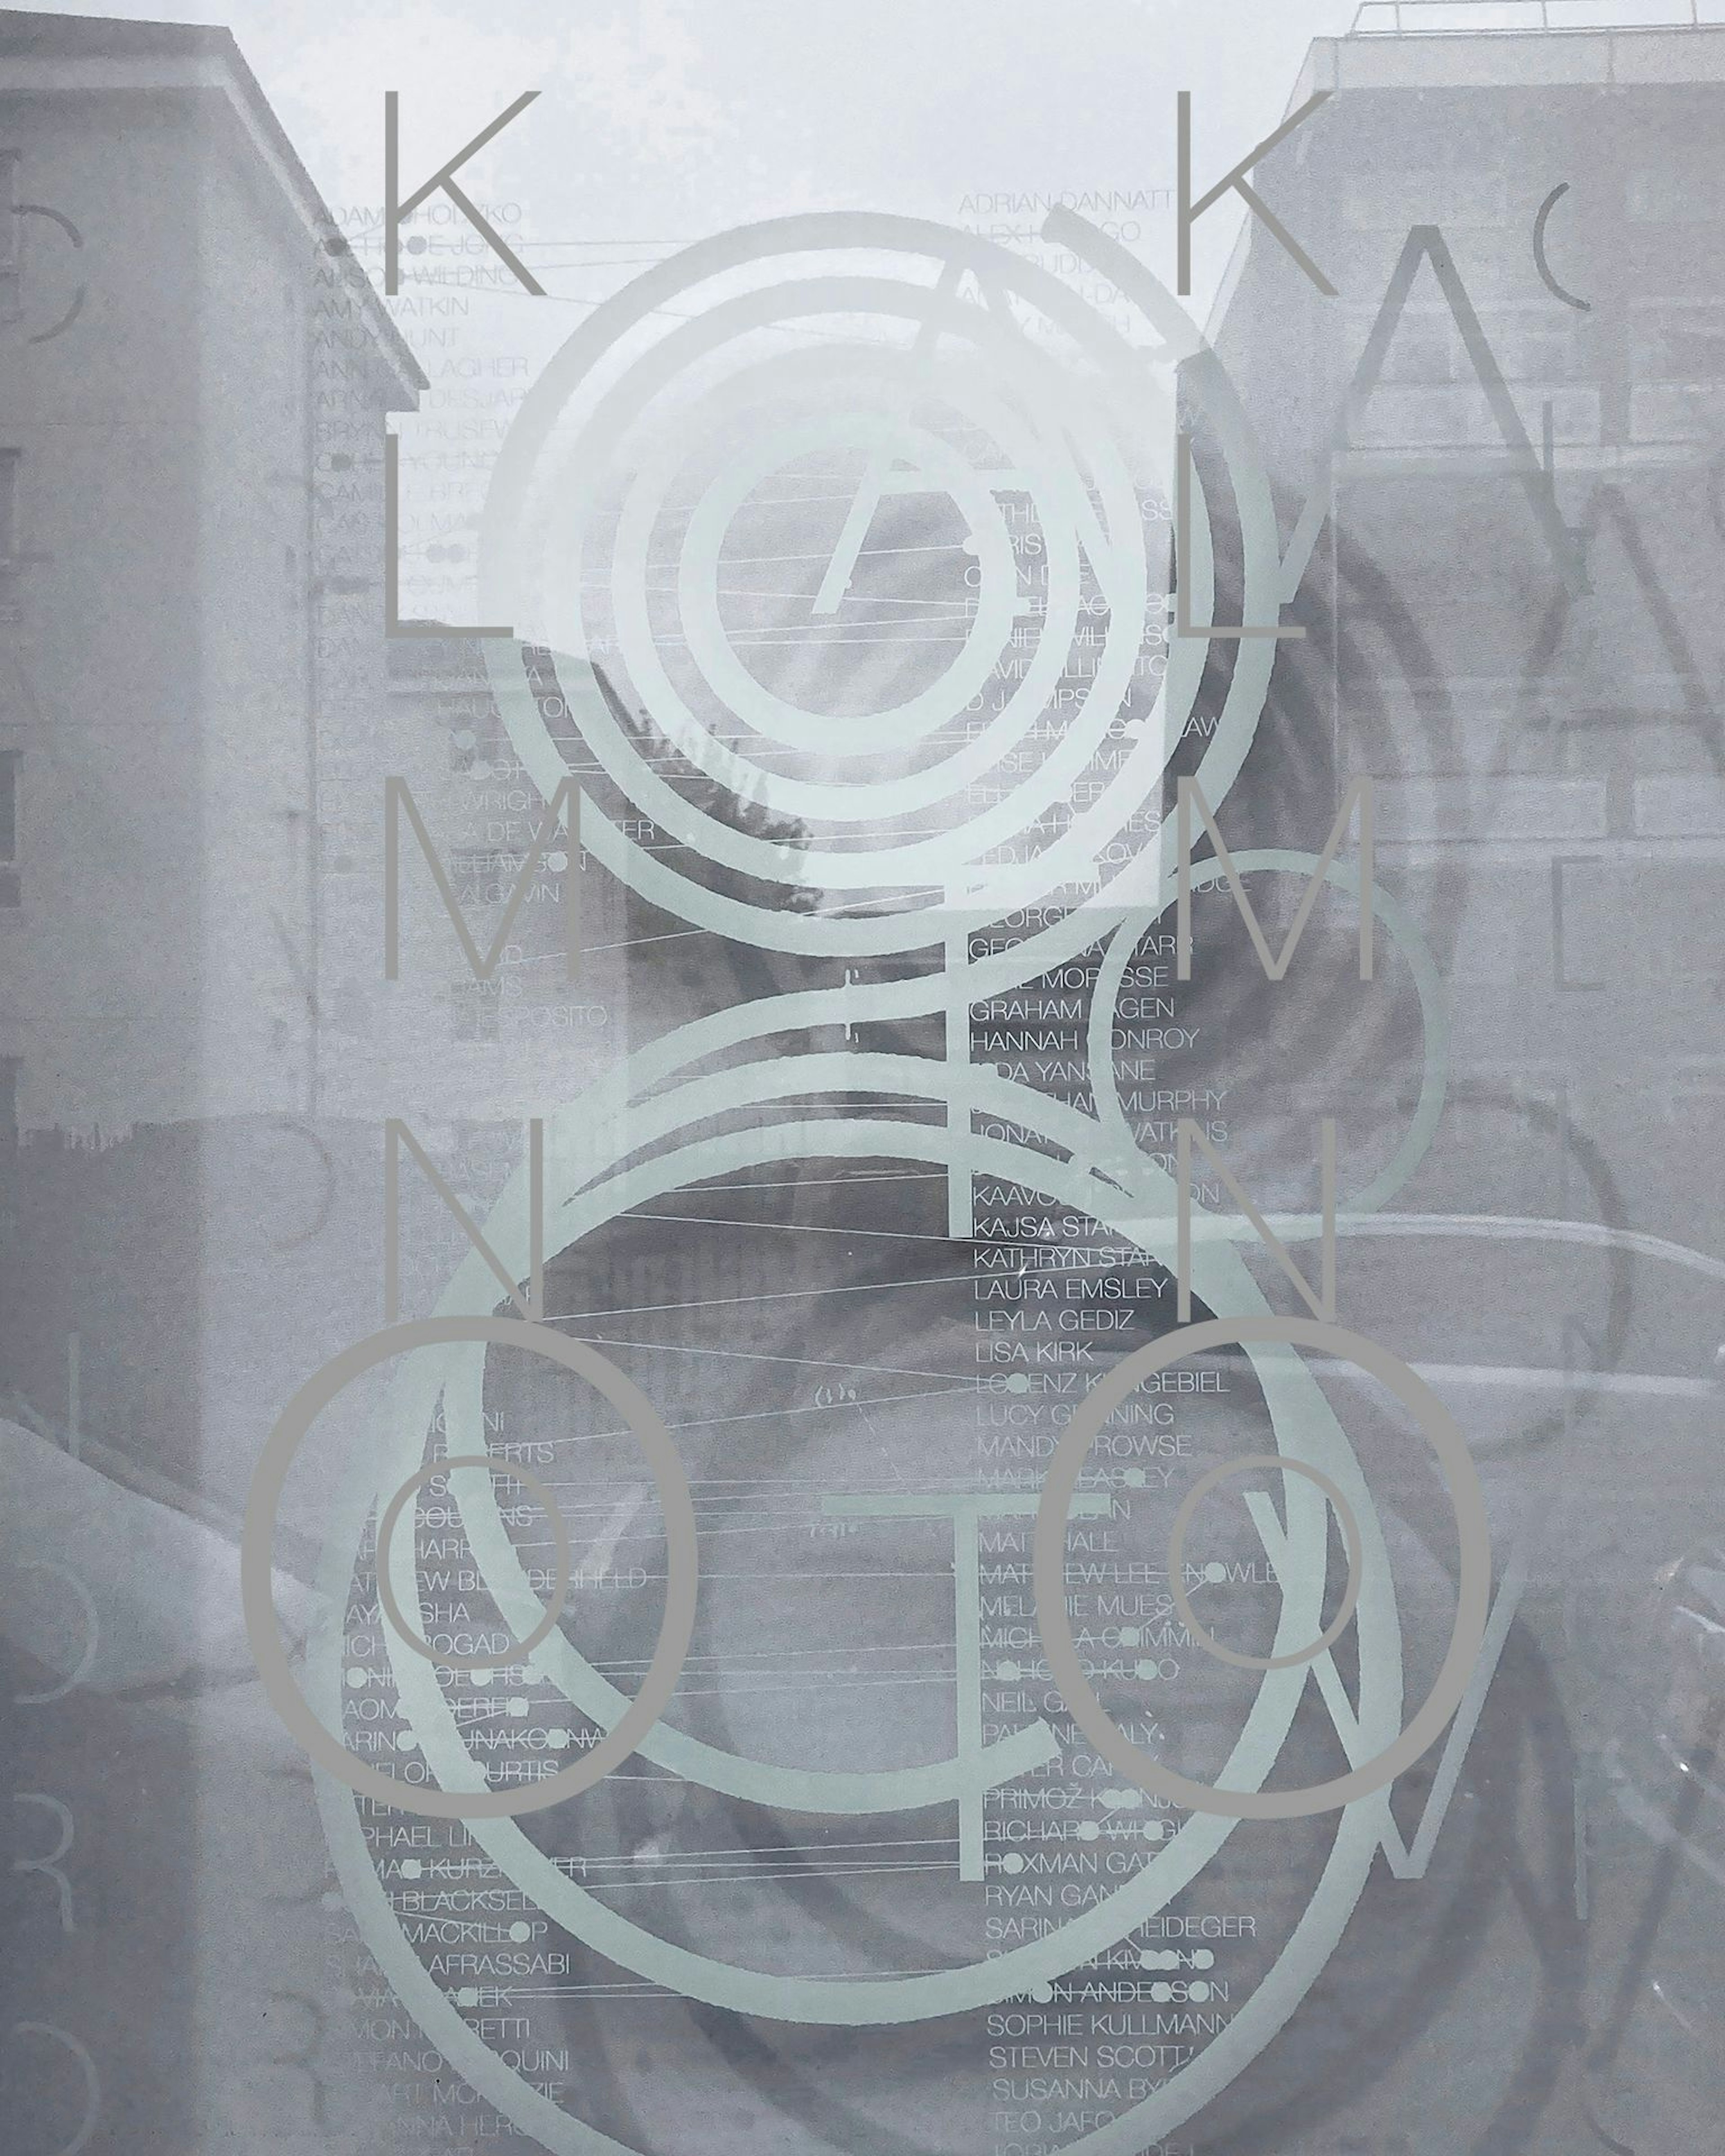 Silkscreen on window of spiral letter 'g'